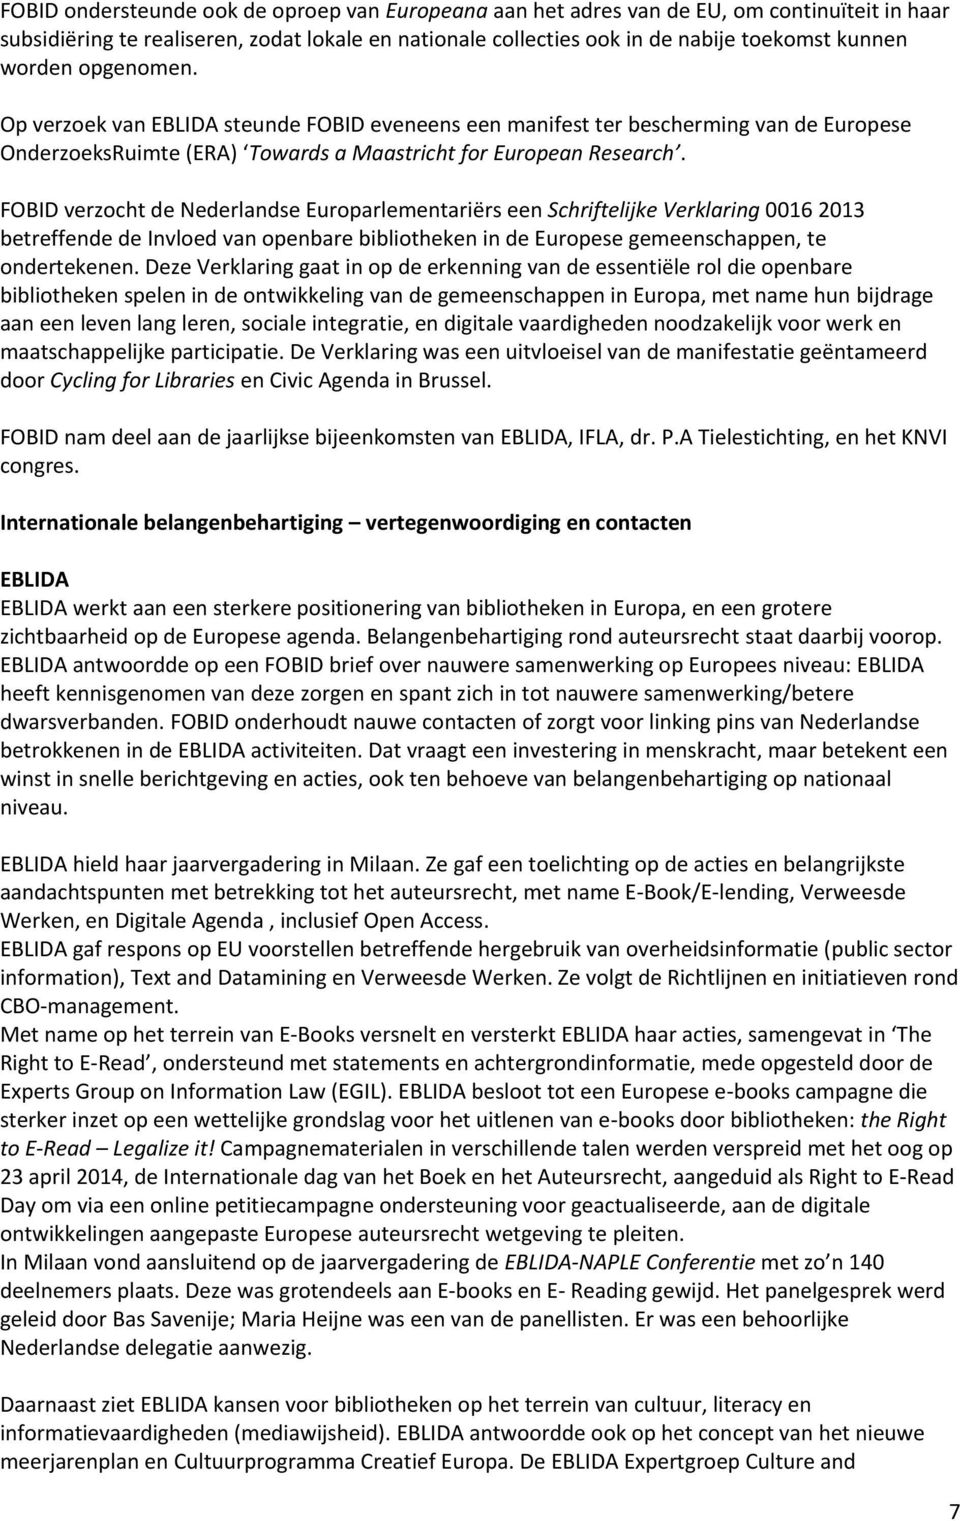 FOBID verzocht de Nederlandse Europarlementariërs een Schriftelijke Verklaring 0016 2013 betreffende de Invloed van openbare bibliotheken in de Europese gemeenschappen, te ondertekenen.